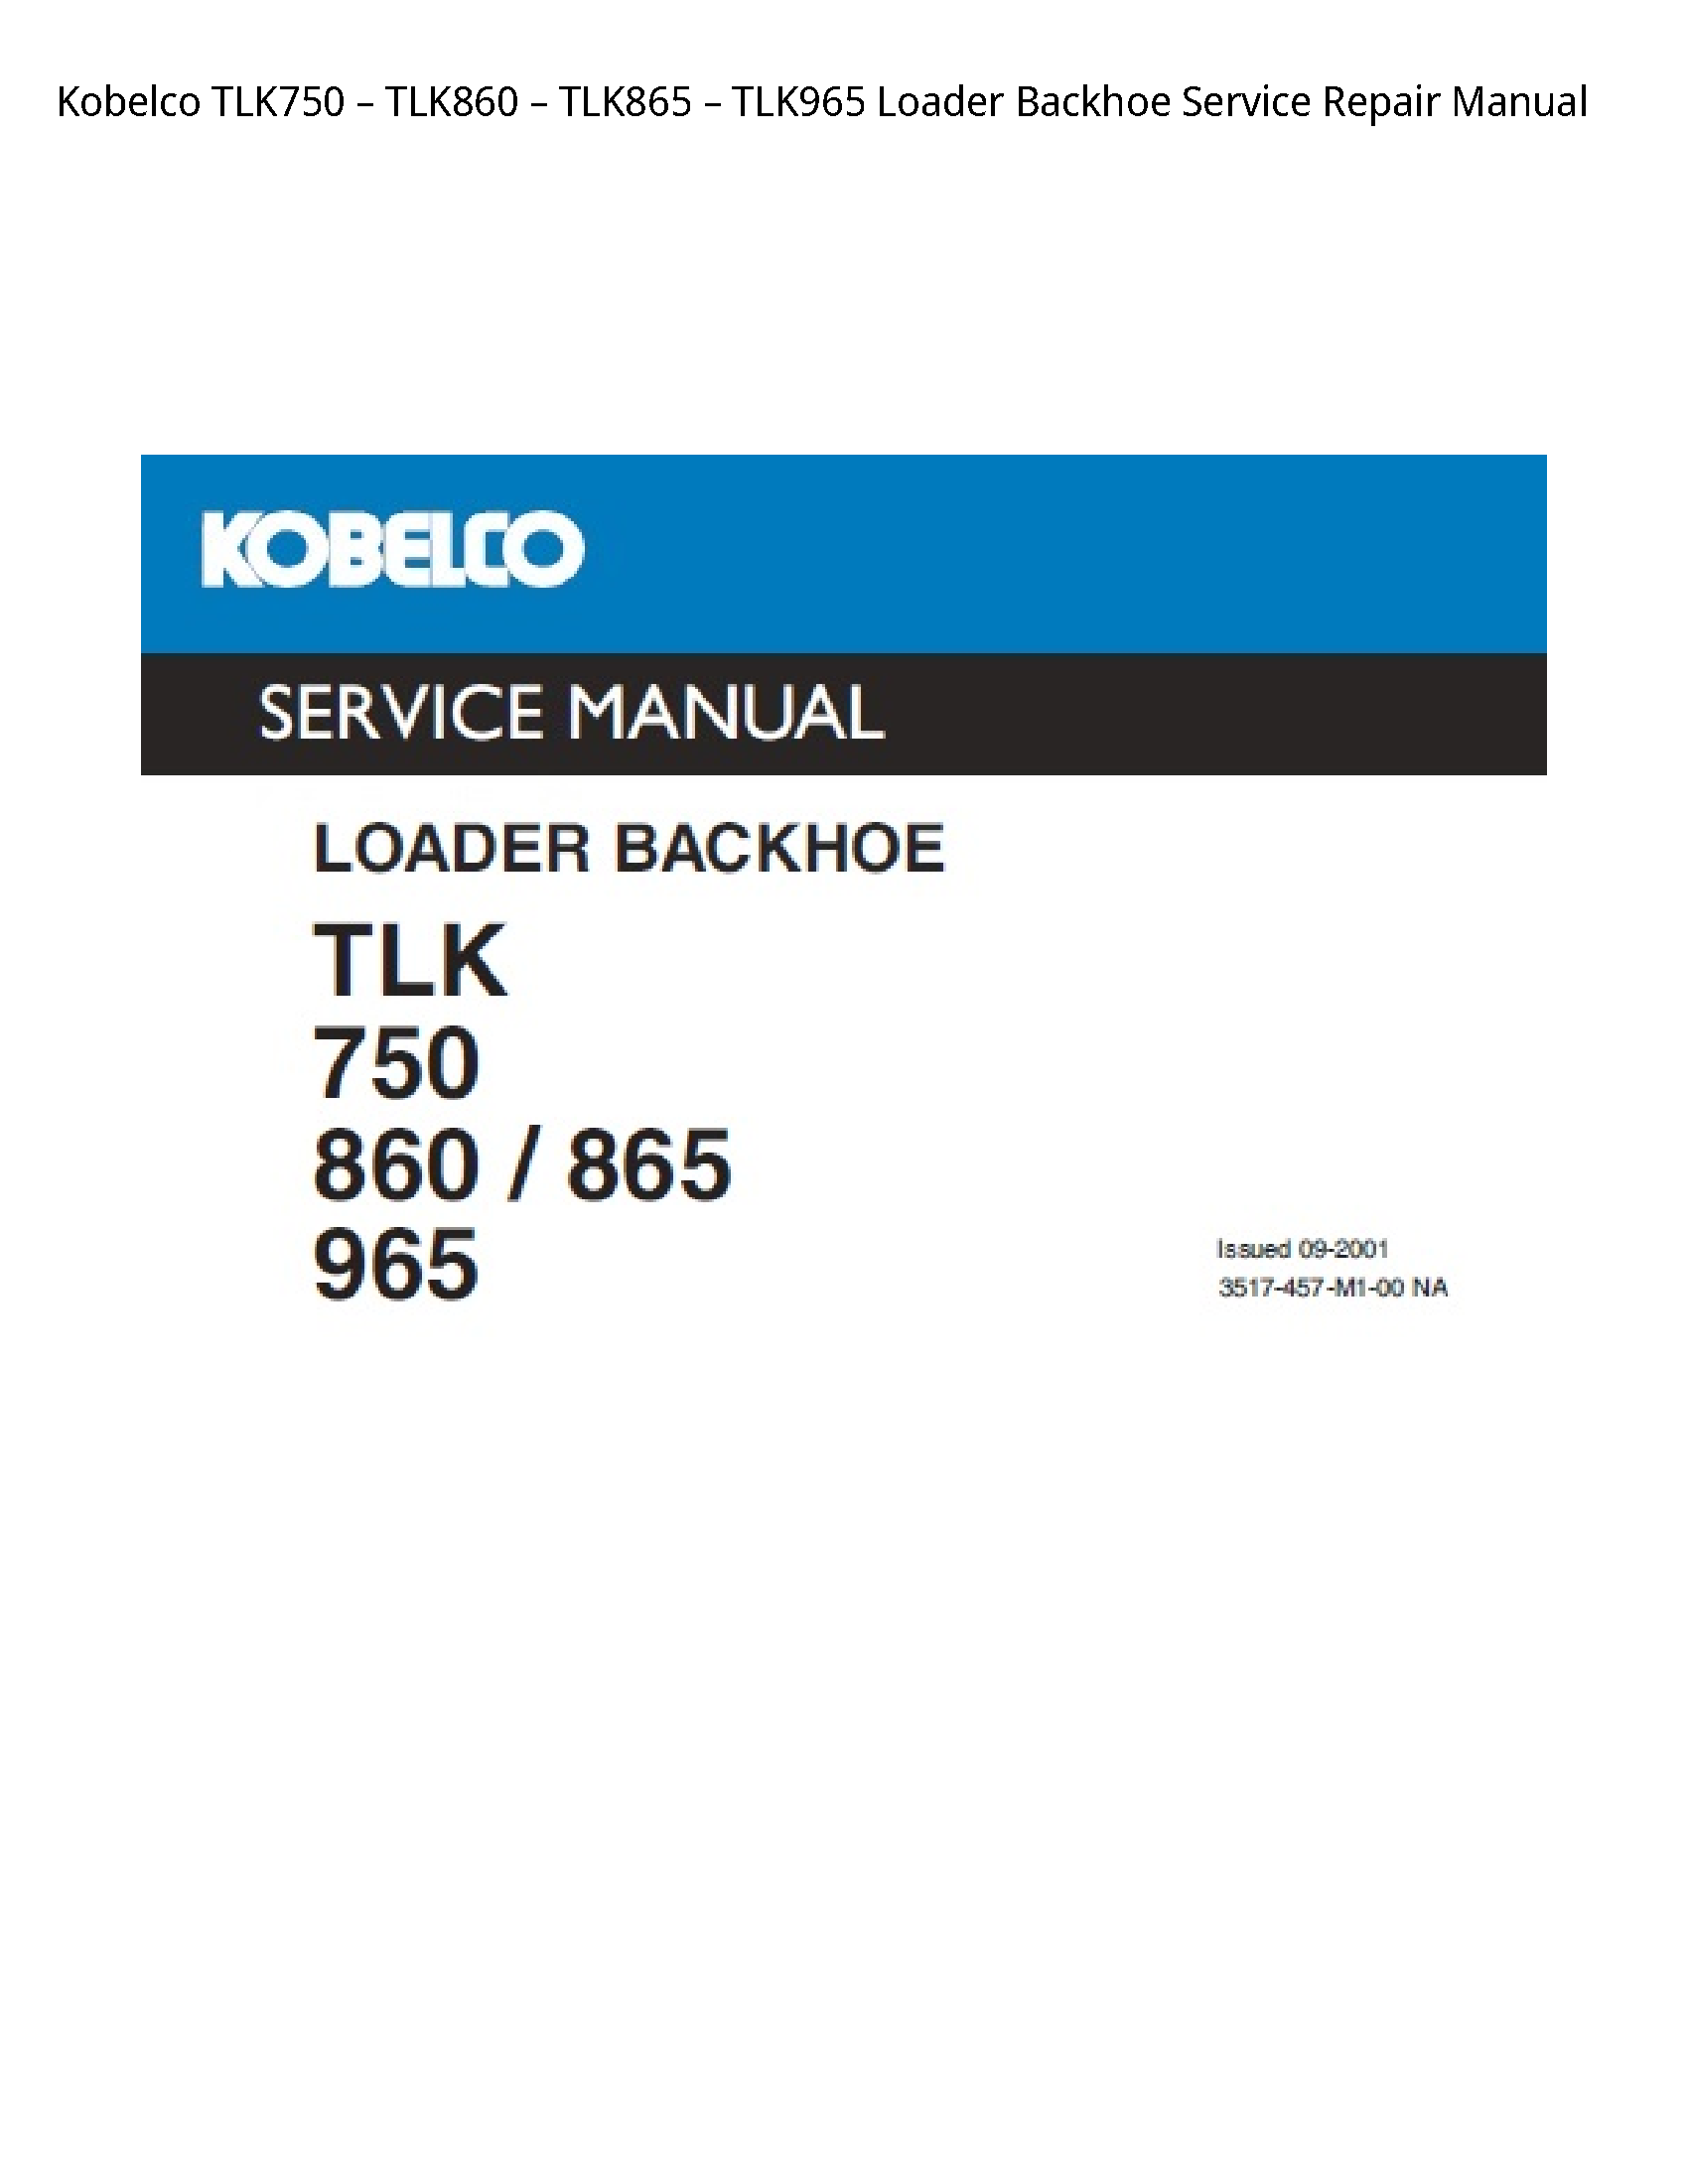 Kobelco TLK750 Loader Backhoe manual